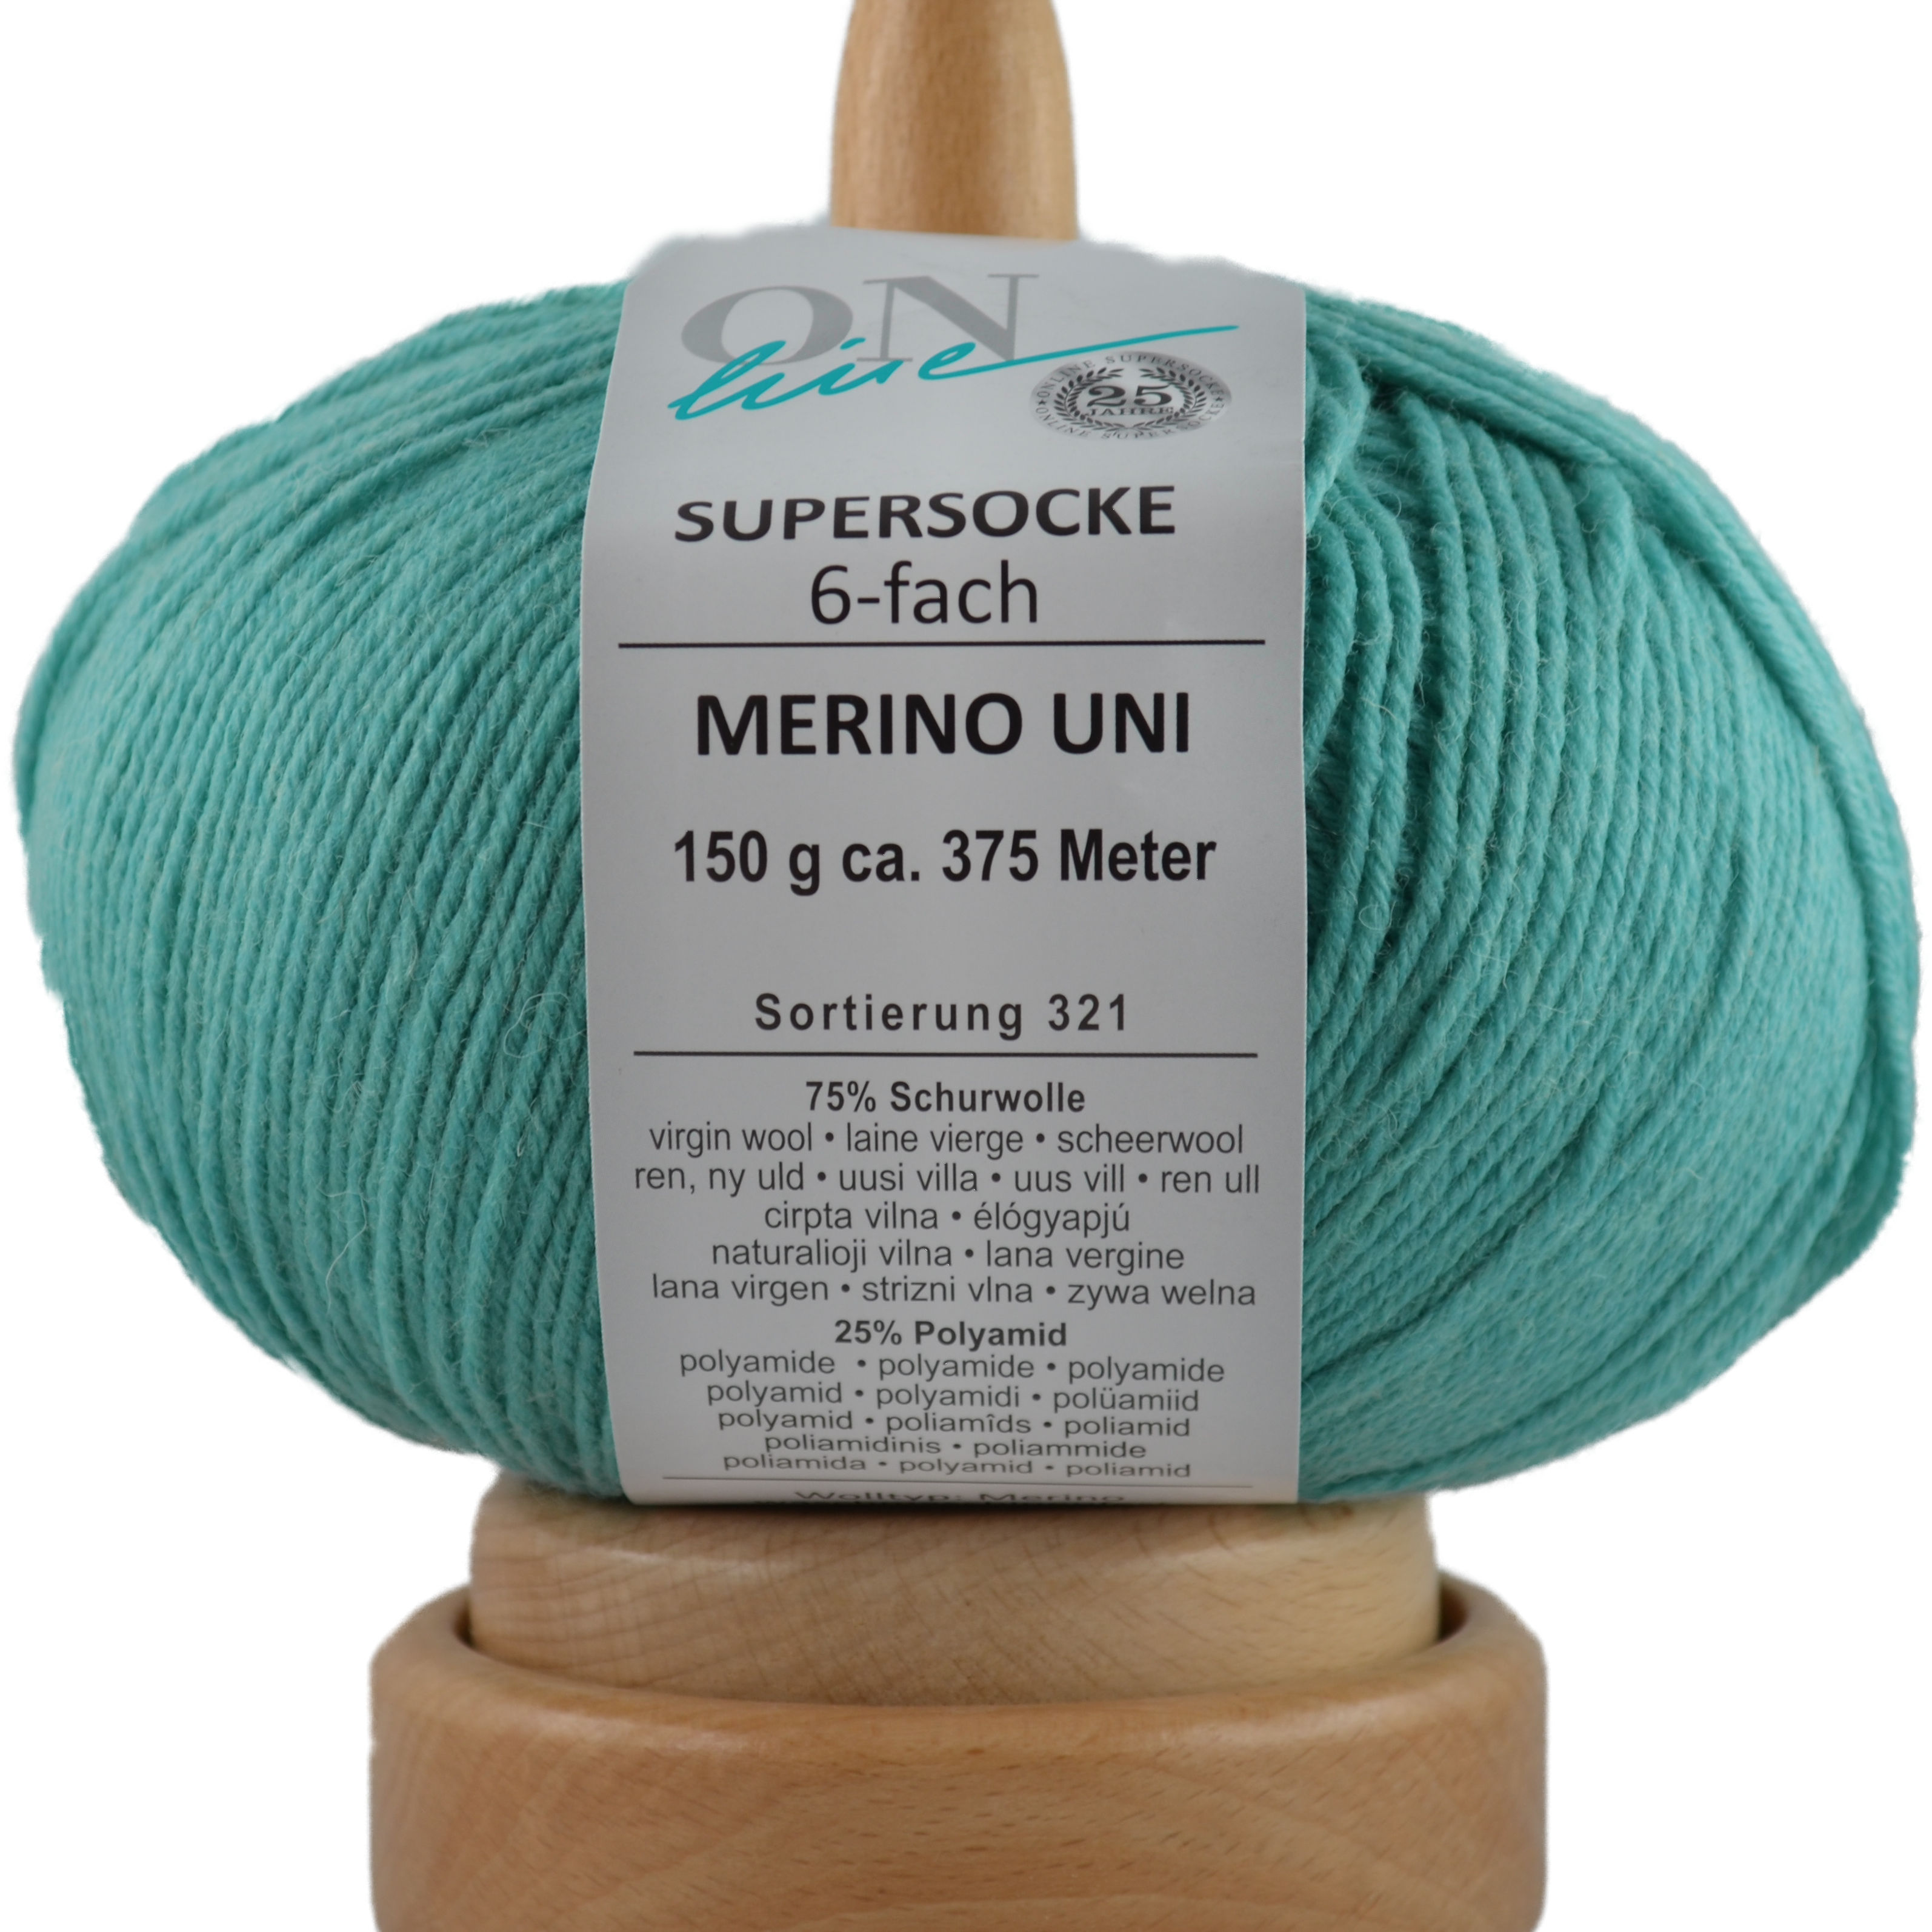 Supersocke 6-fach Merino Uni von ONline Sort. 321 - 5008 - mintblau